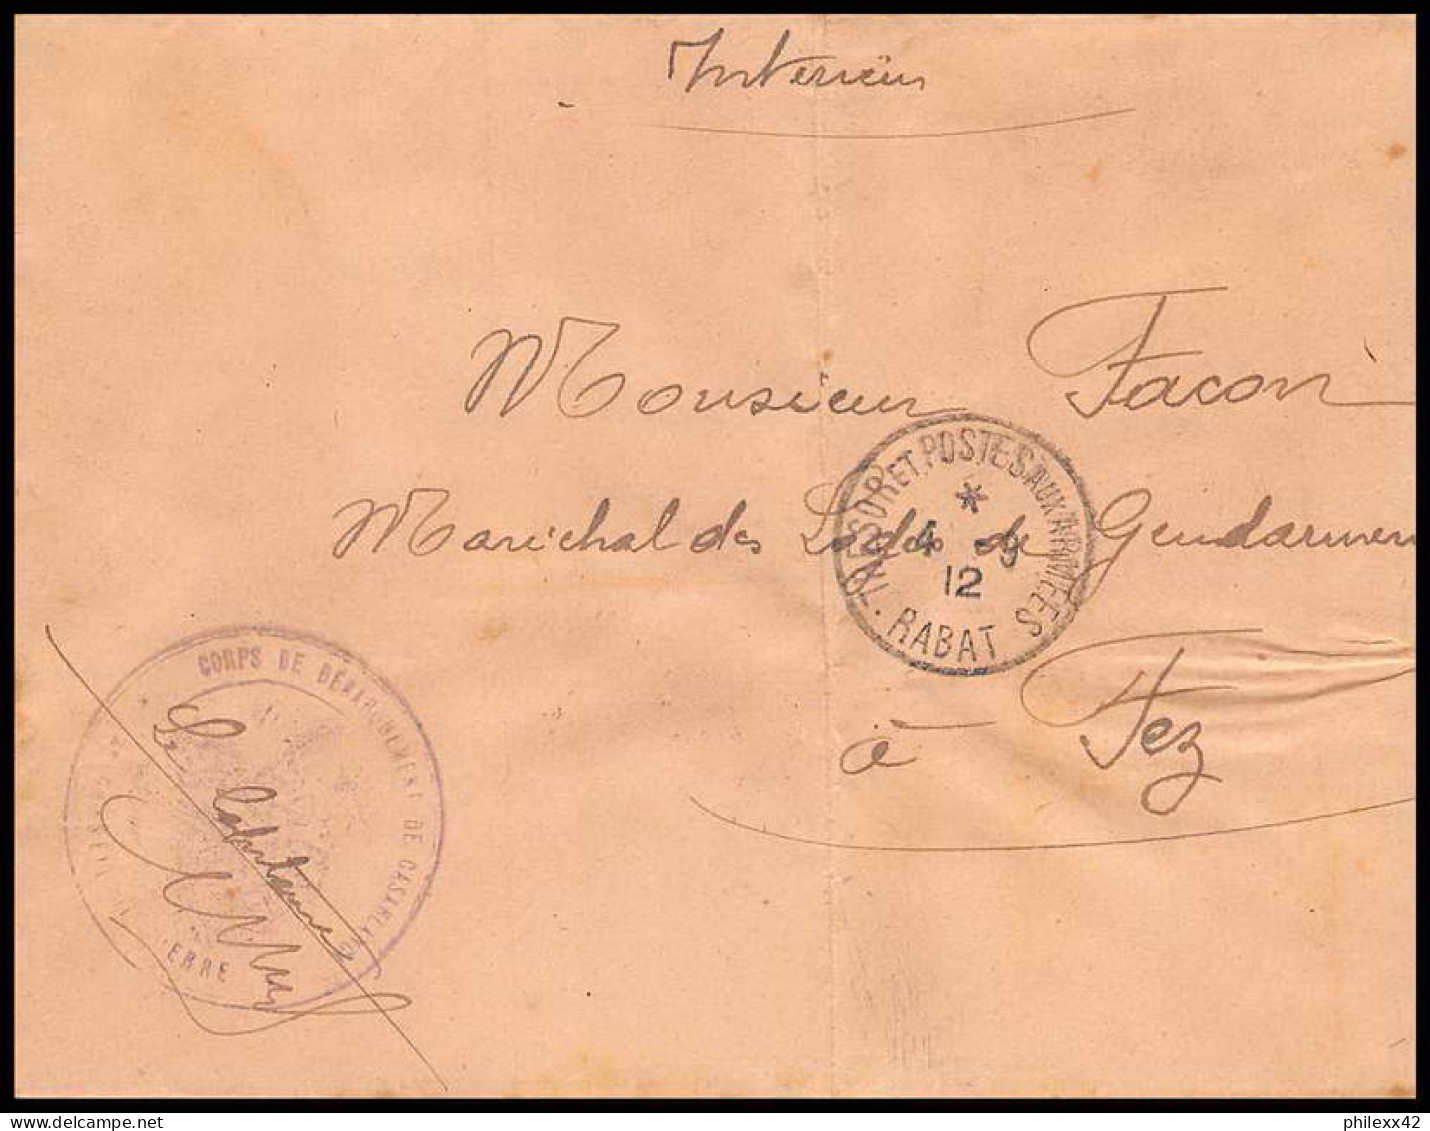 collection N°33 marcophilie militaire lot de 57 lettres covers guerre 1914 départ - de 2 euros pièce